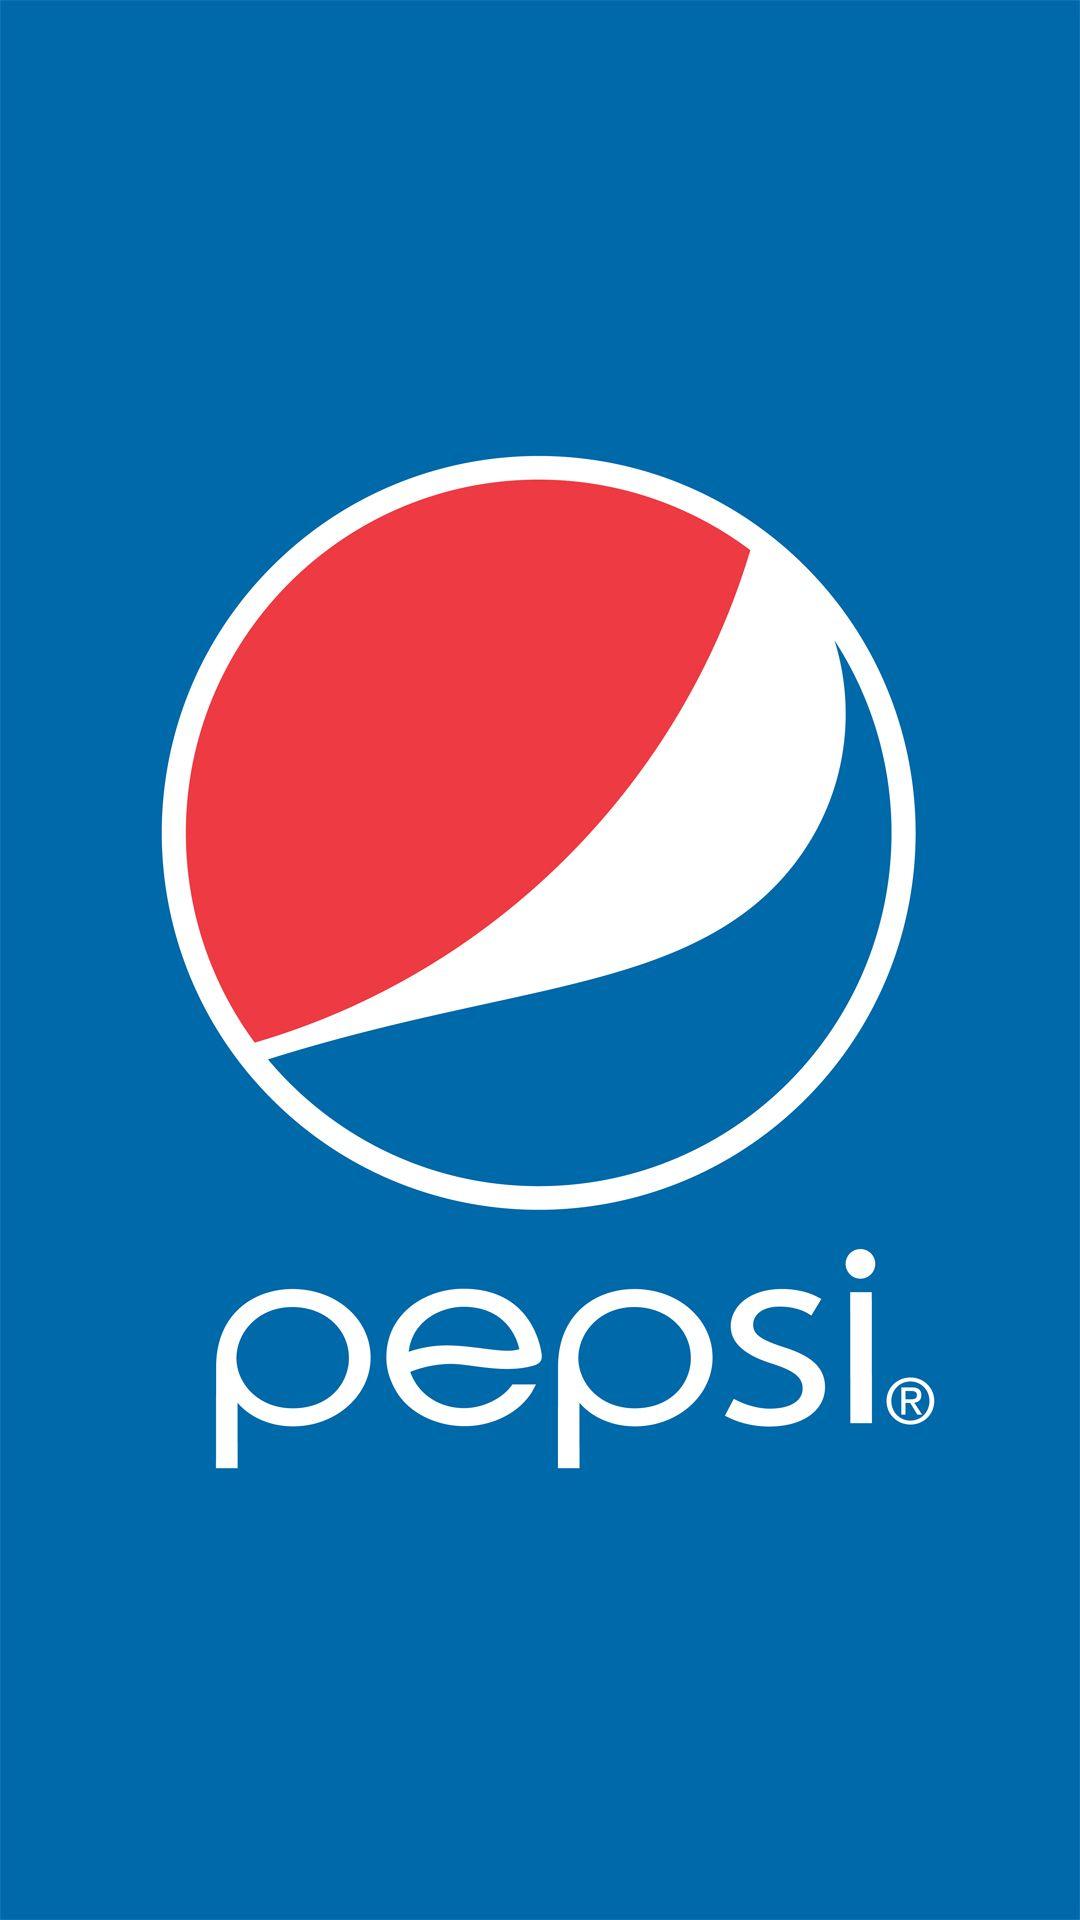 Pepsi Wallpaper. Cool Wallpaper!. Pepsi logo, Pepsi